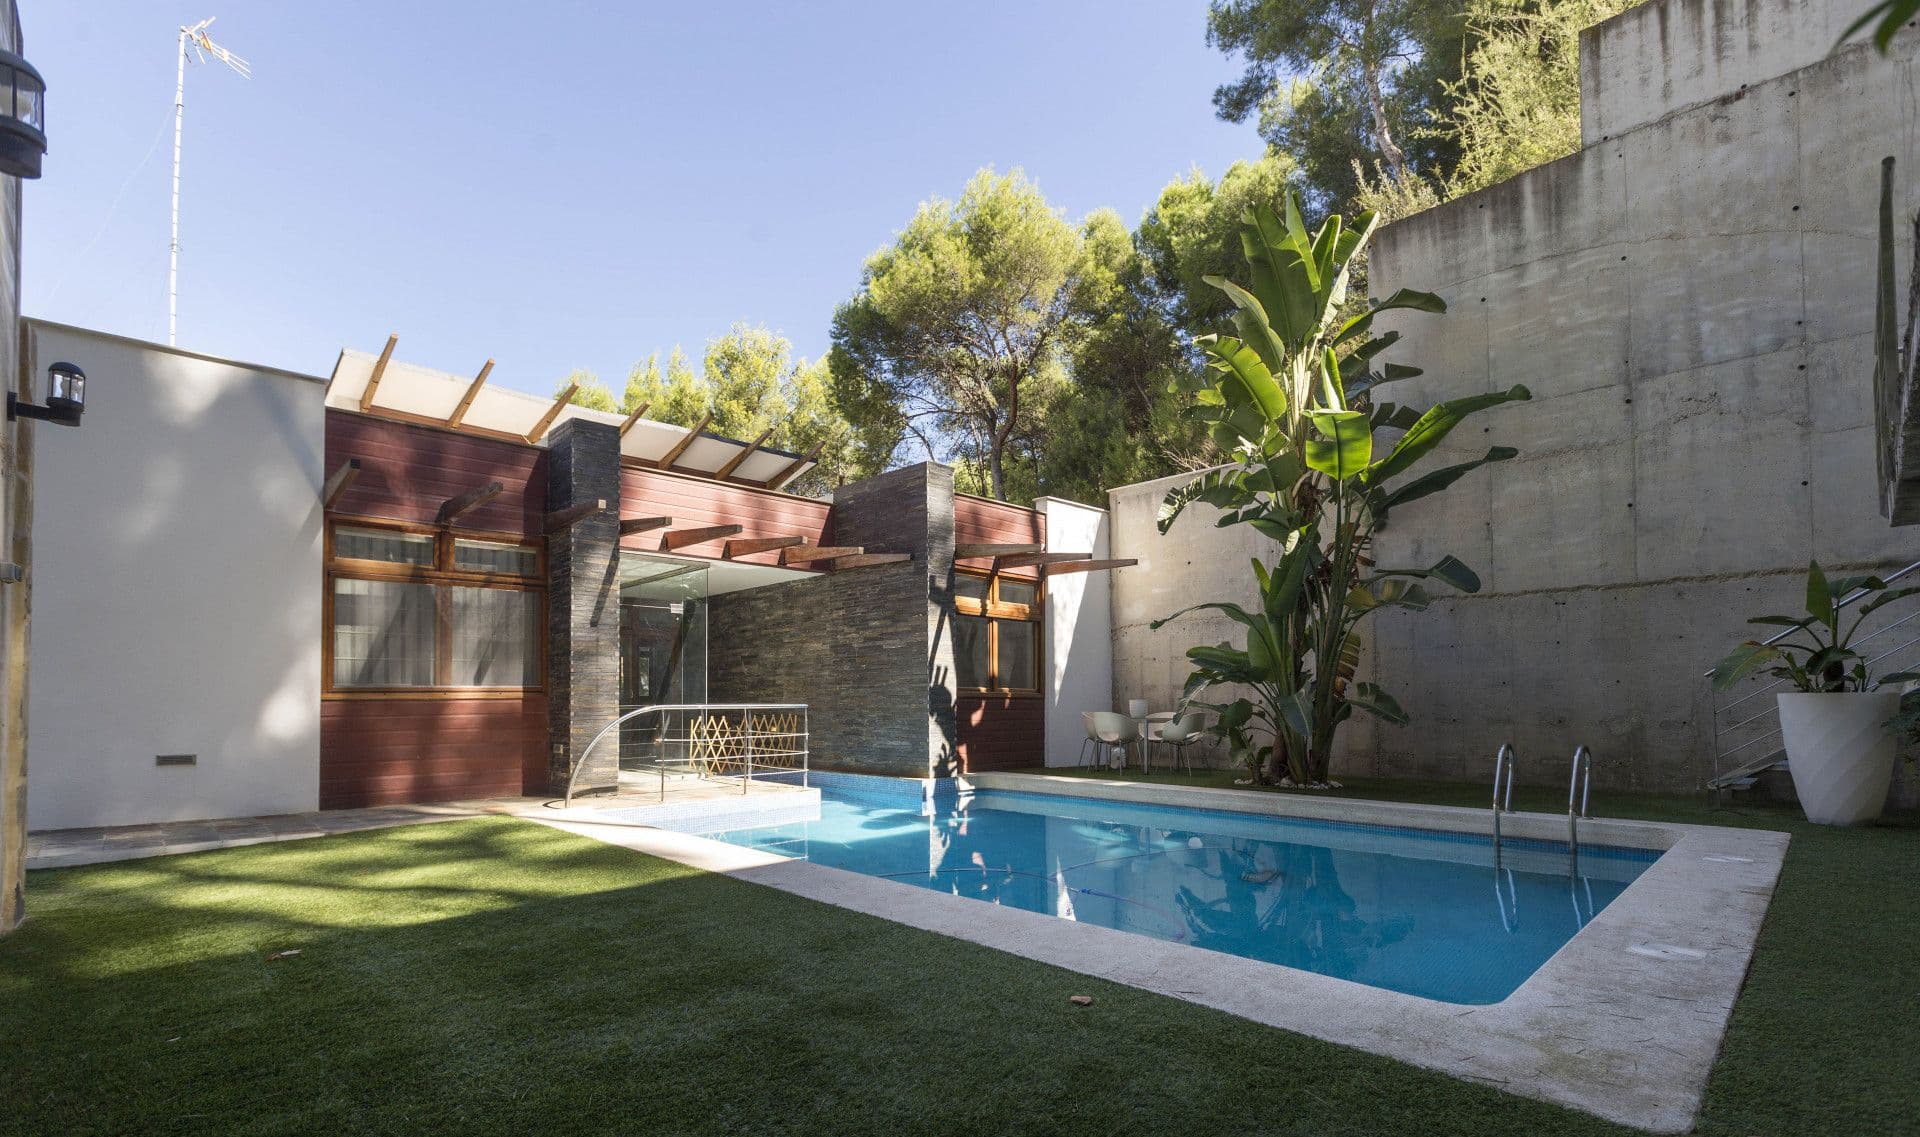 Maison écologique située sur un terrain privé de l'urbanisation El Bosque Golf de Chiva (Valence). Une villa idéale pour ceux qui apprécient l'importance du style moderne et l'individualité de la maison.